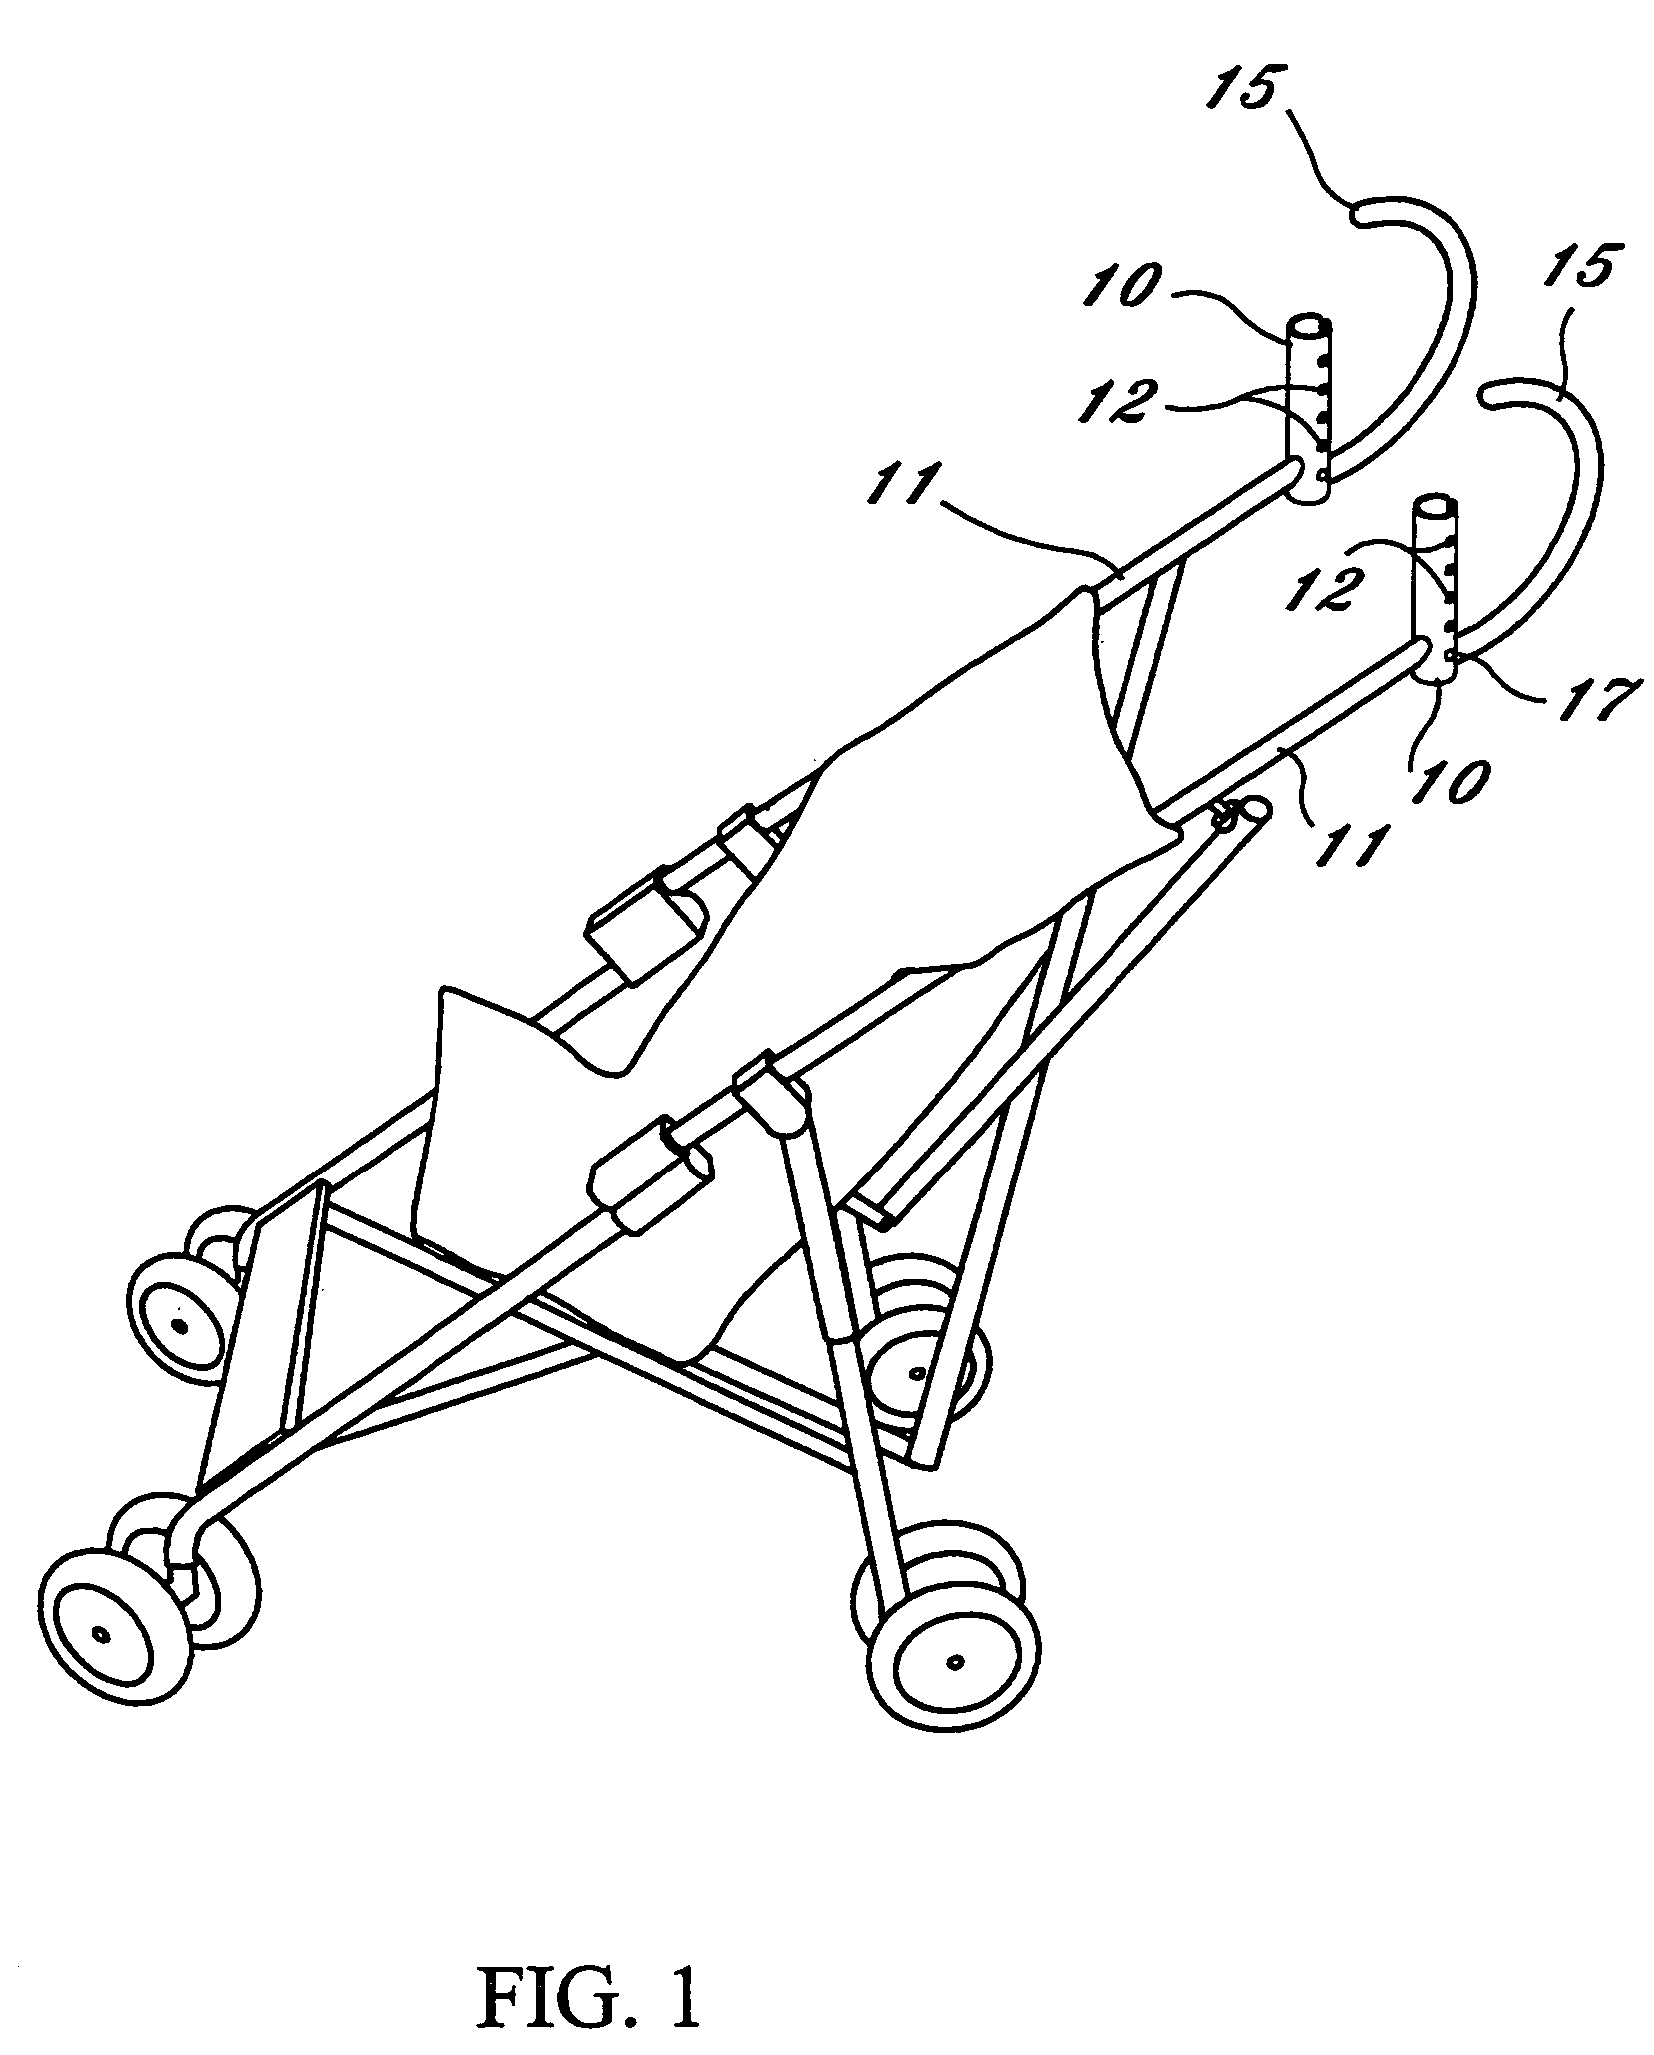 Adjustable, bi-directional, removable baby stroller handle